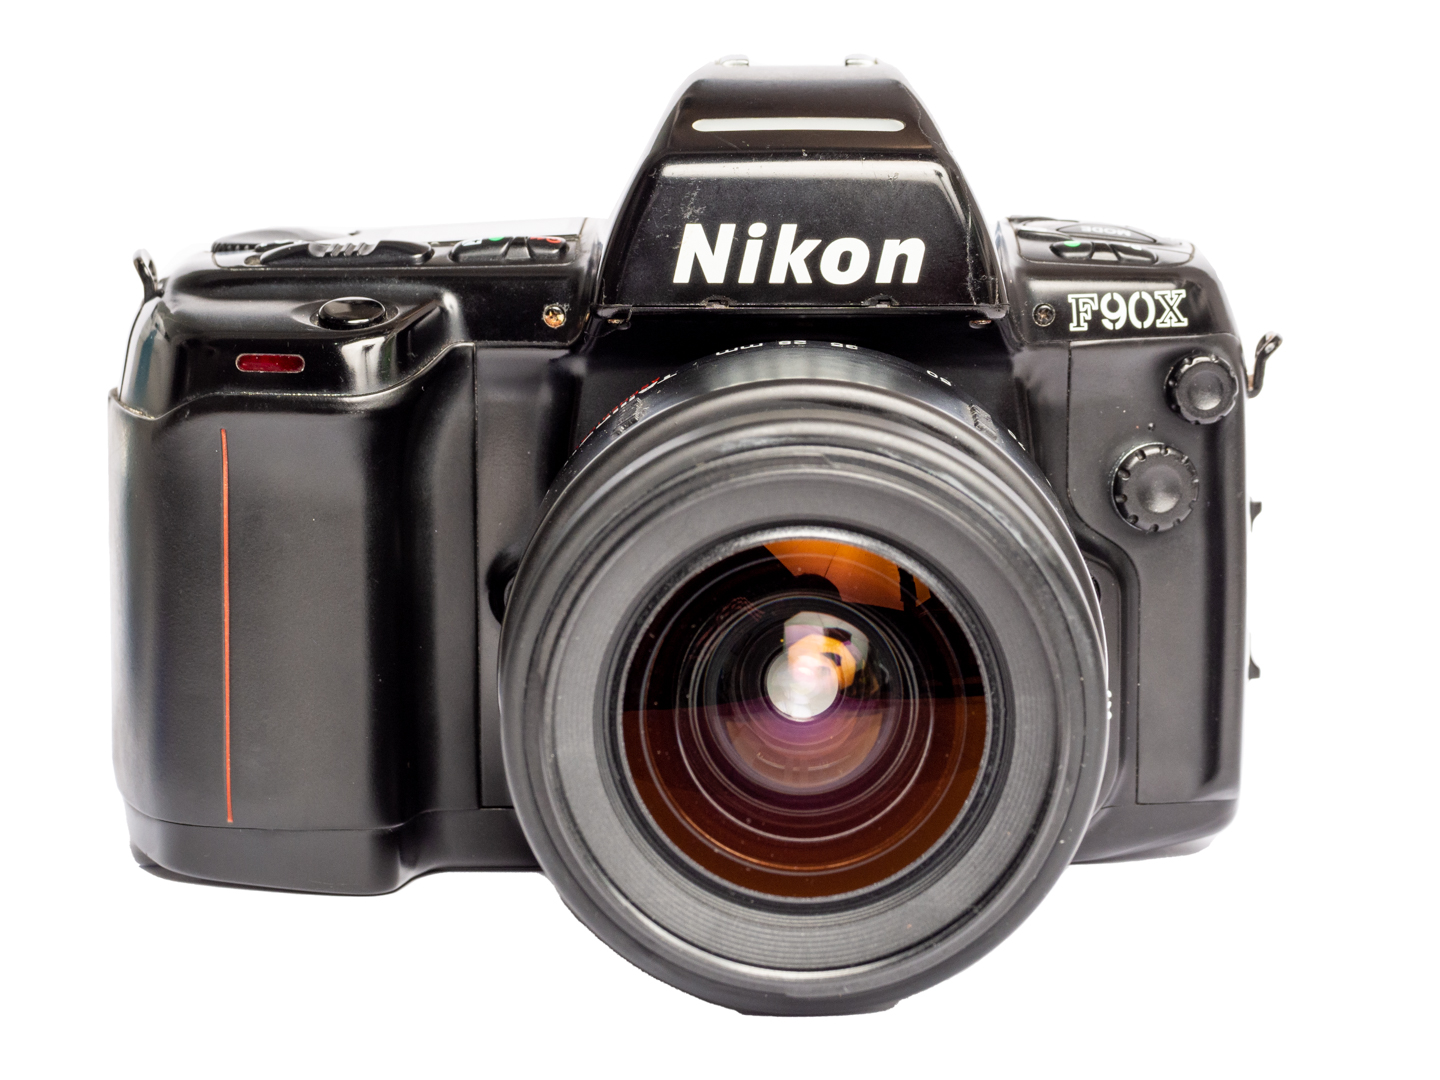 Câmera 35mm - Nikon F90x (8.5) + Lente Tamrom 28-80mm (9/10) + Alça Nova +  Case + Filme - Foto com Filme